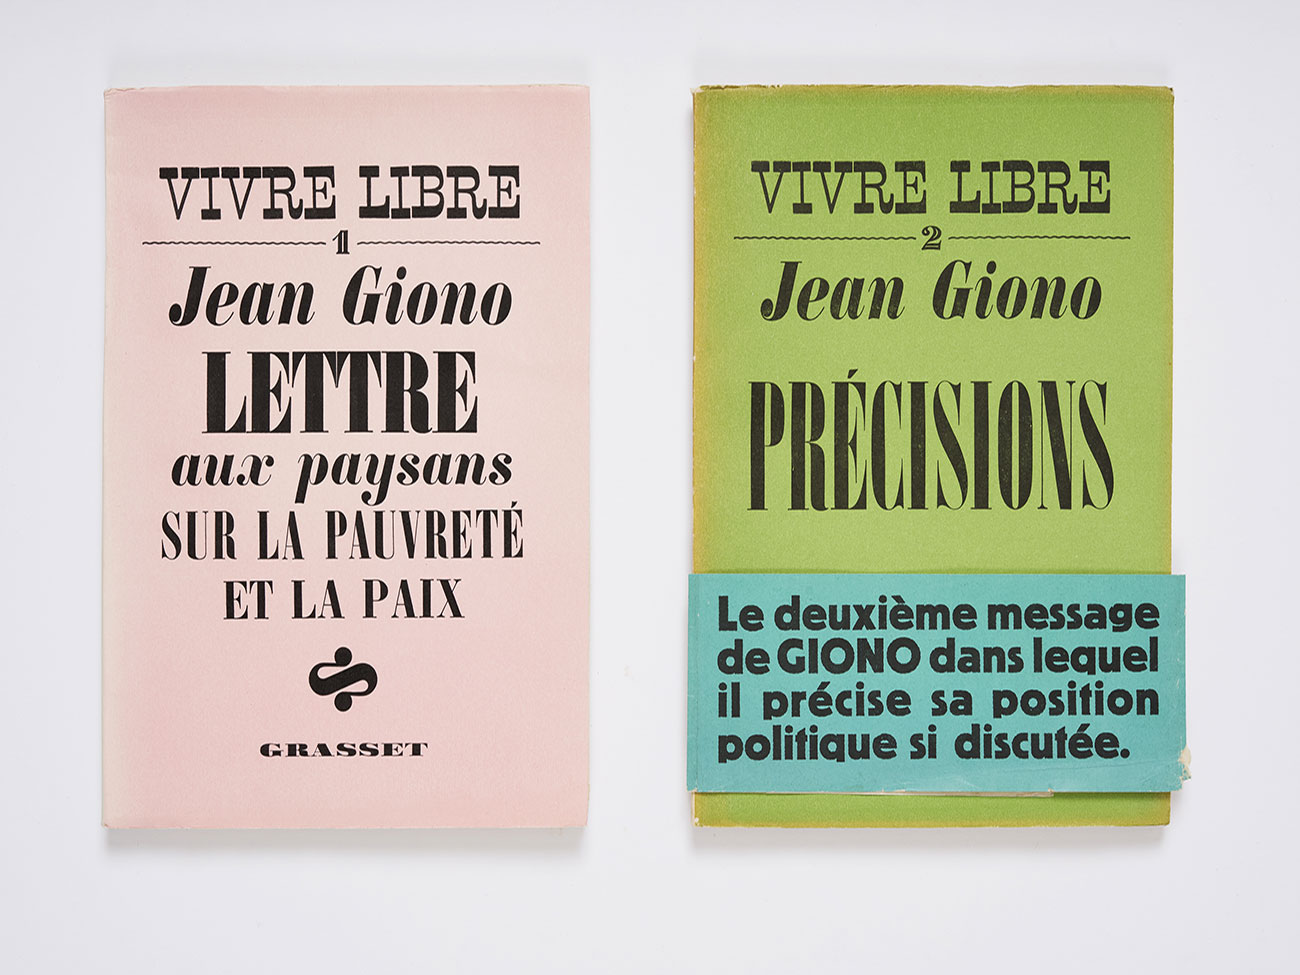 Couvertures de Vivre libre, Grasset, 1938-1939. Association des Amis de Jean Giono. Cliché © David Giancatarina